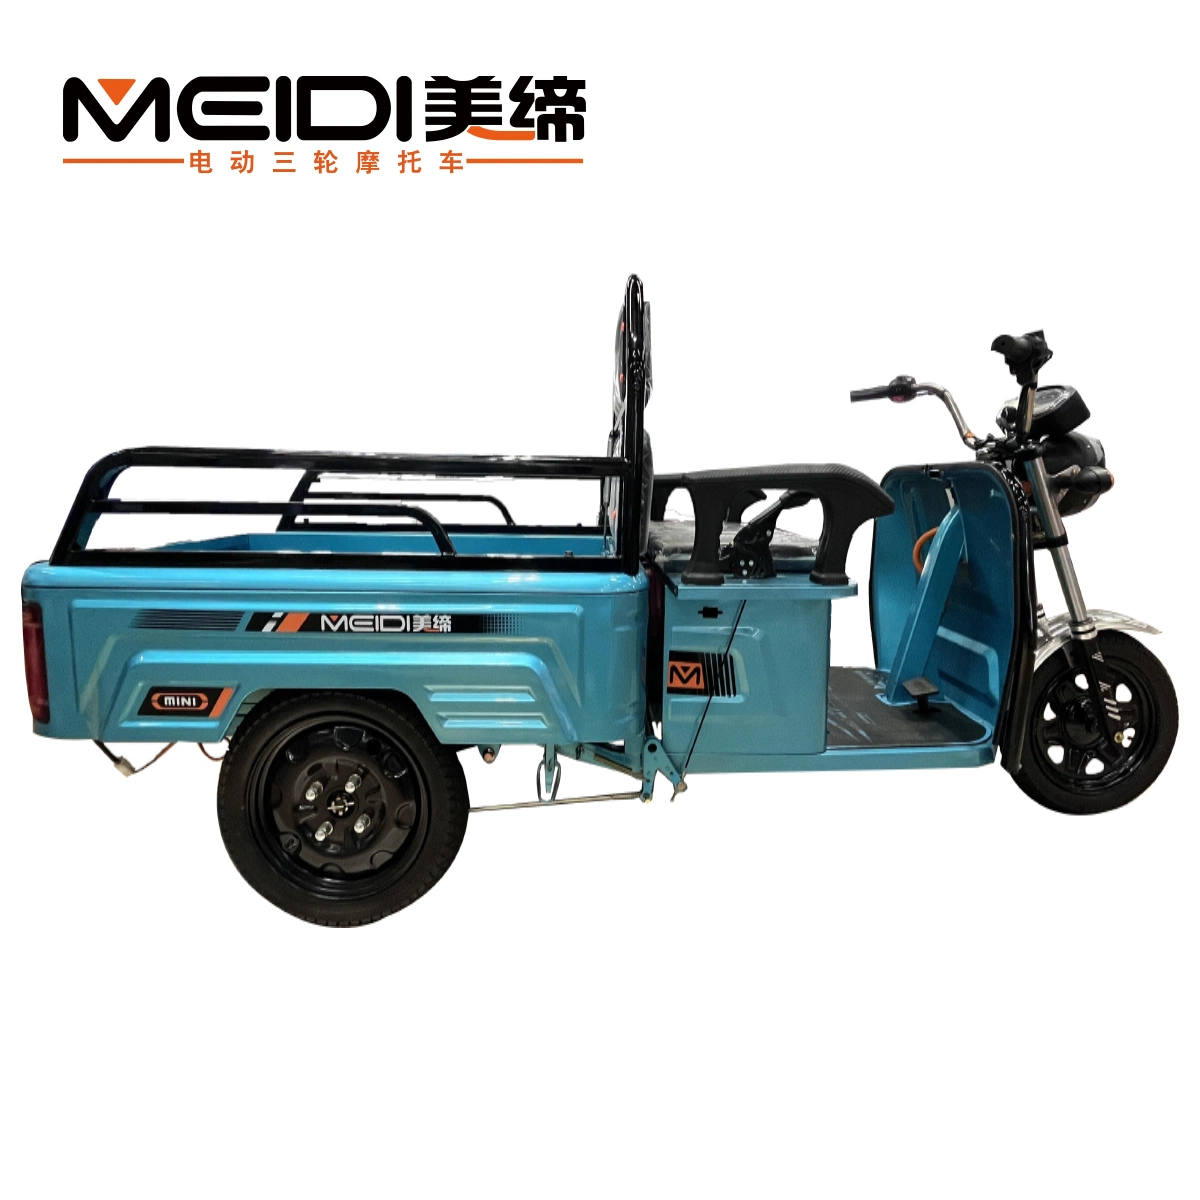 Movilidad vehículo eléctrico Tricycles tres ruedas de carga de motocicleta eléctrica